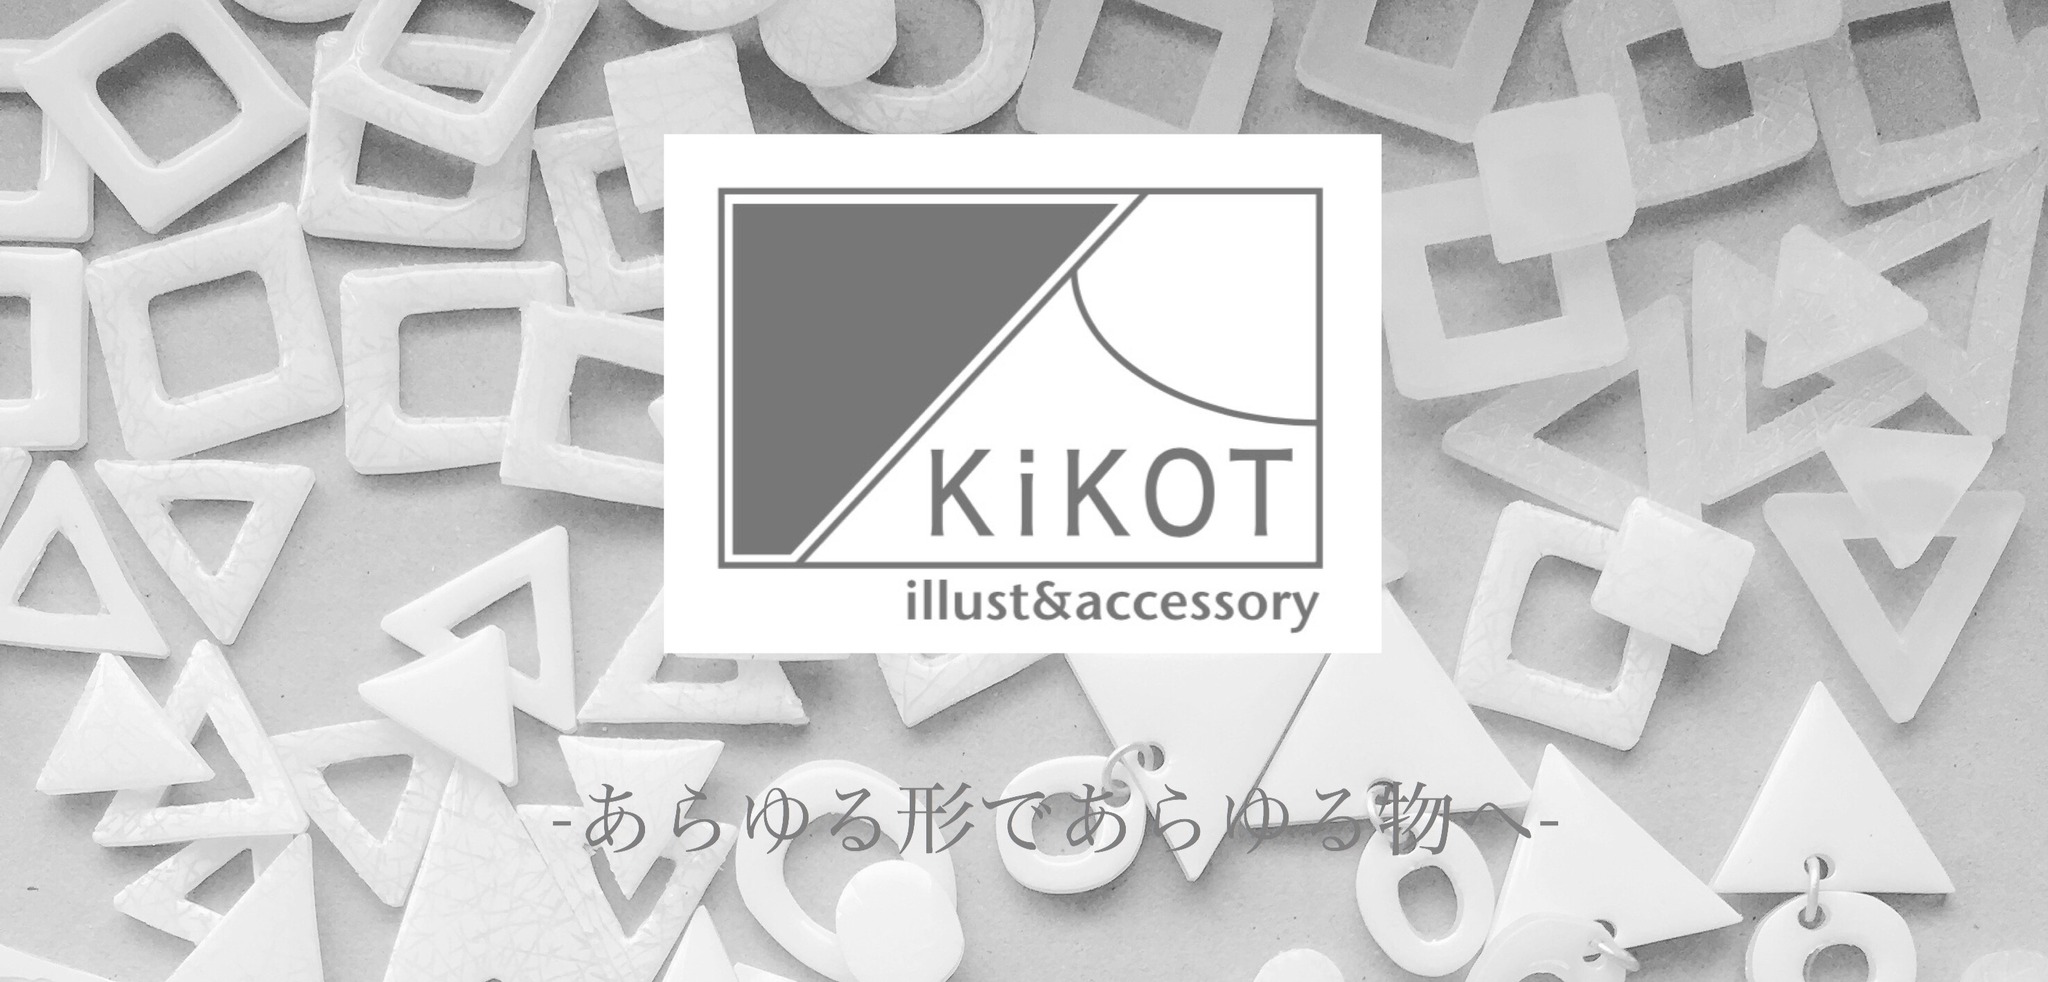 KiKOT-illust&accessory-